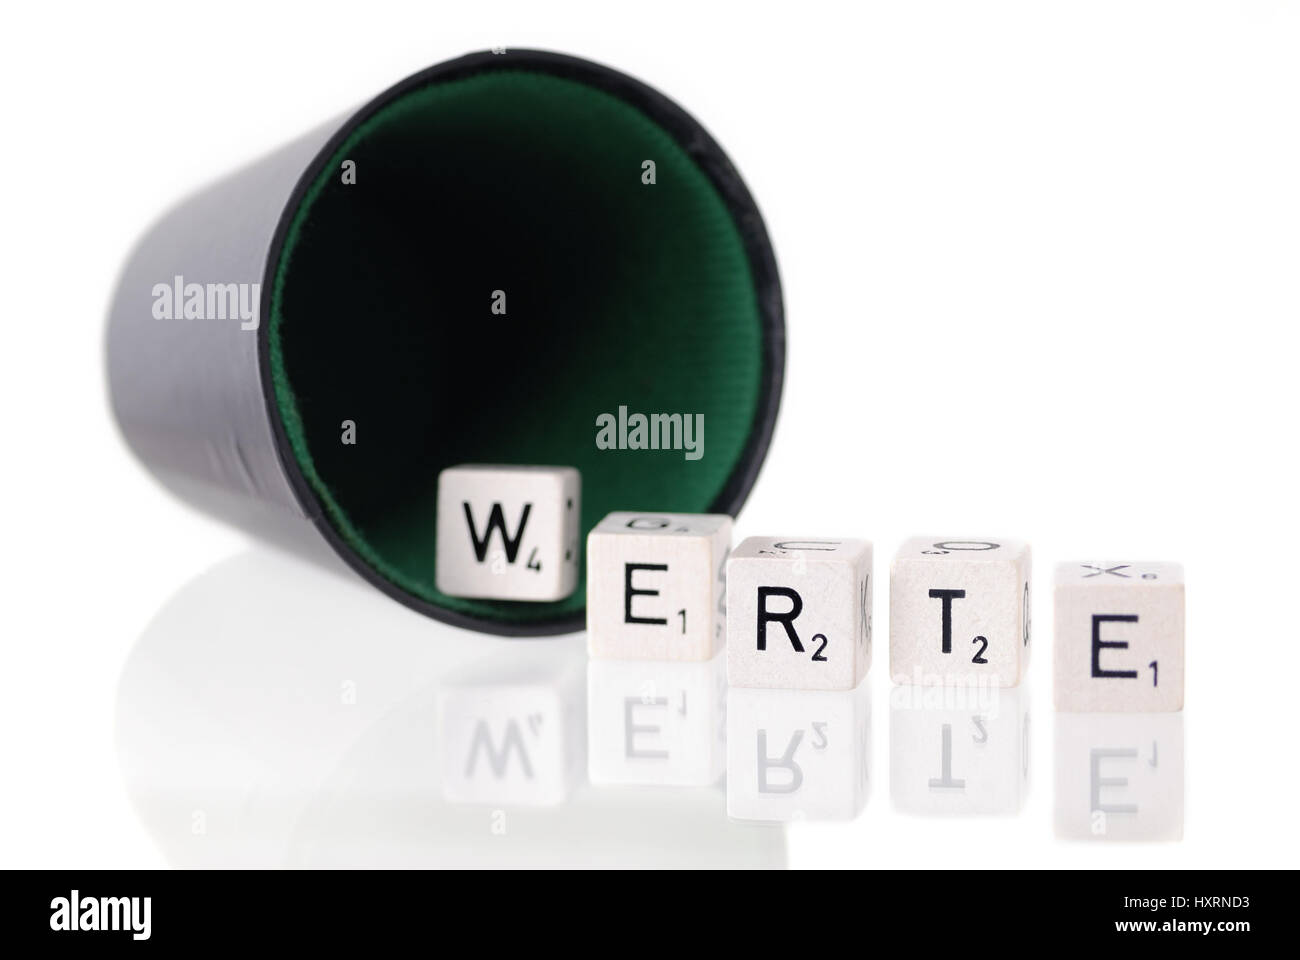 Dice cup with letter cube, stroke values, Würfelbecher mit Buchstabenwürfel, Schriftzug Werte Stock Photo